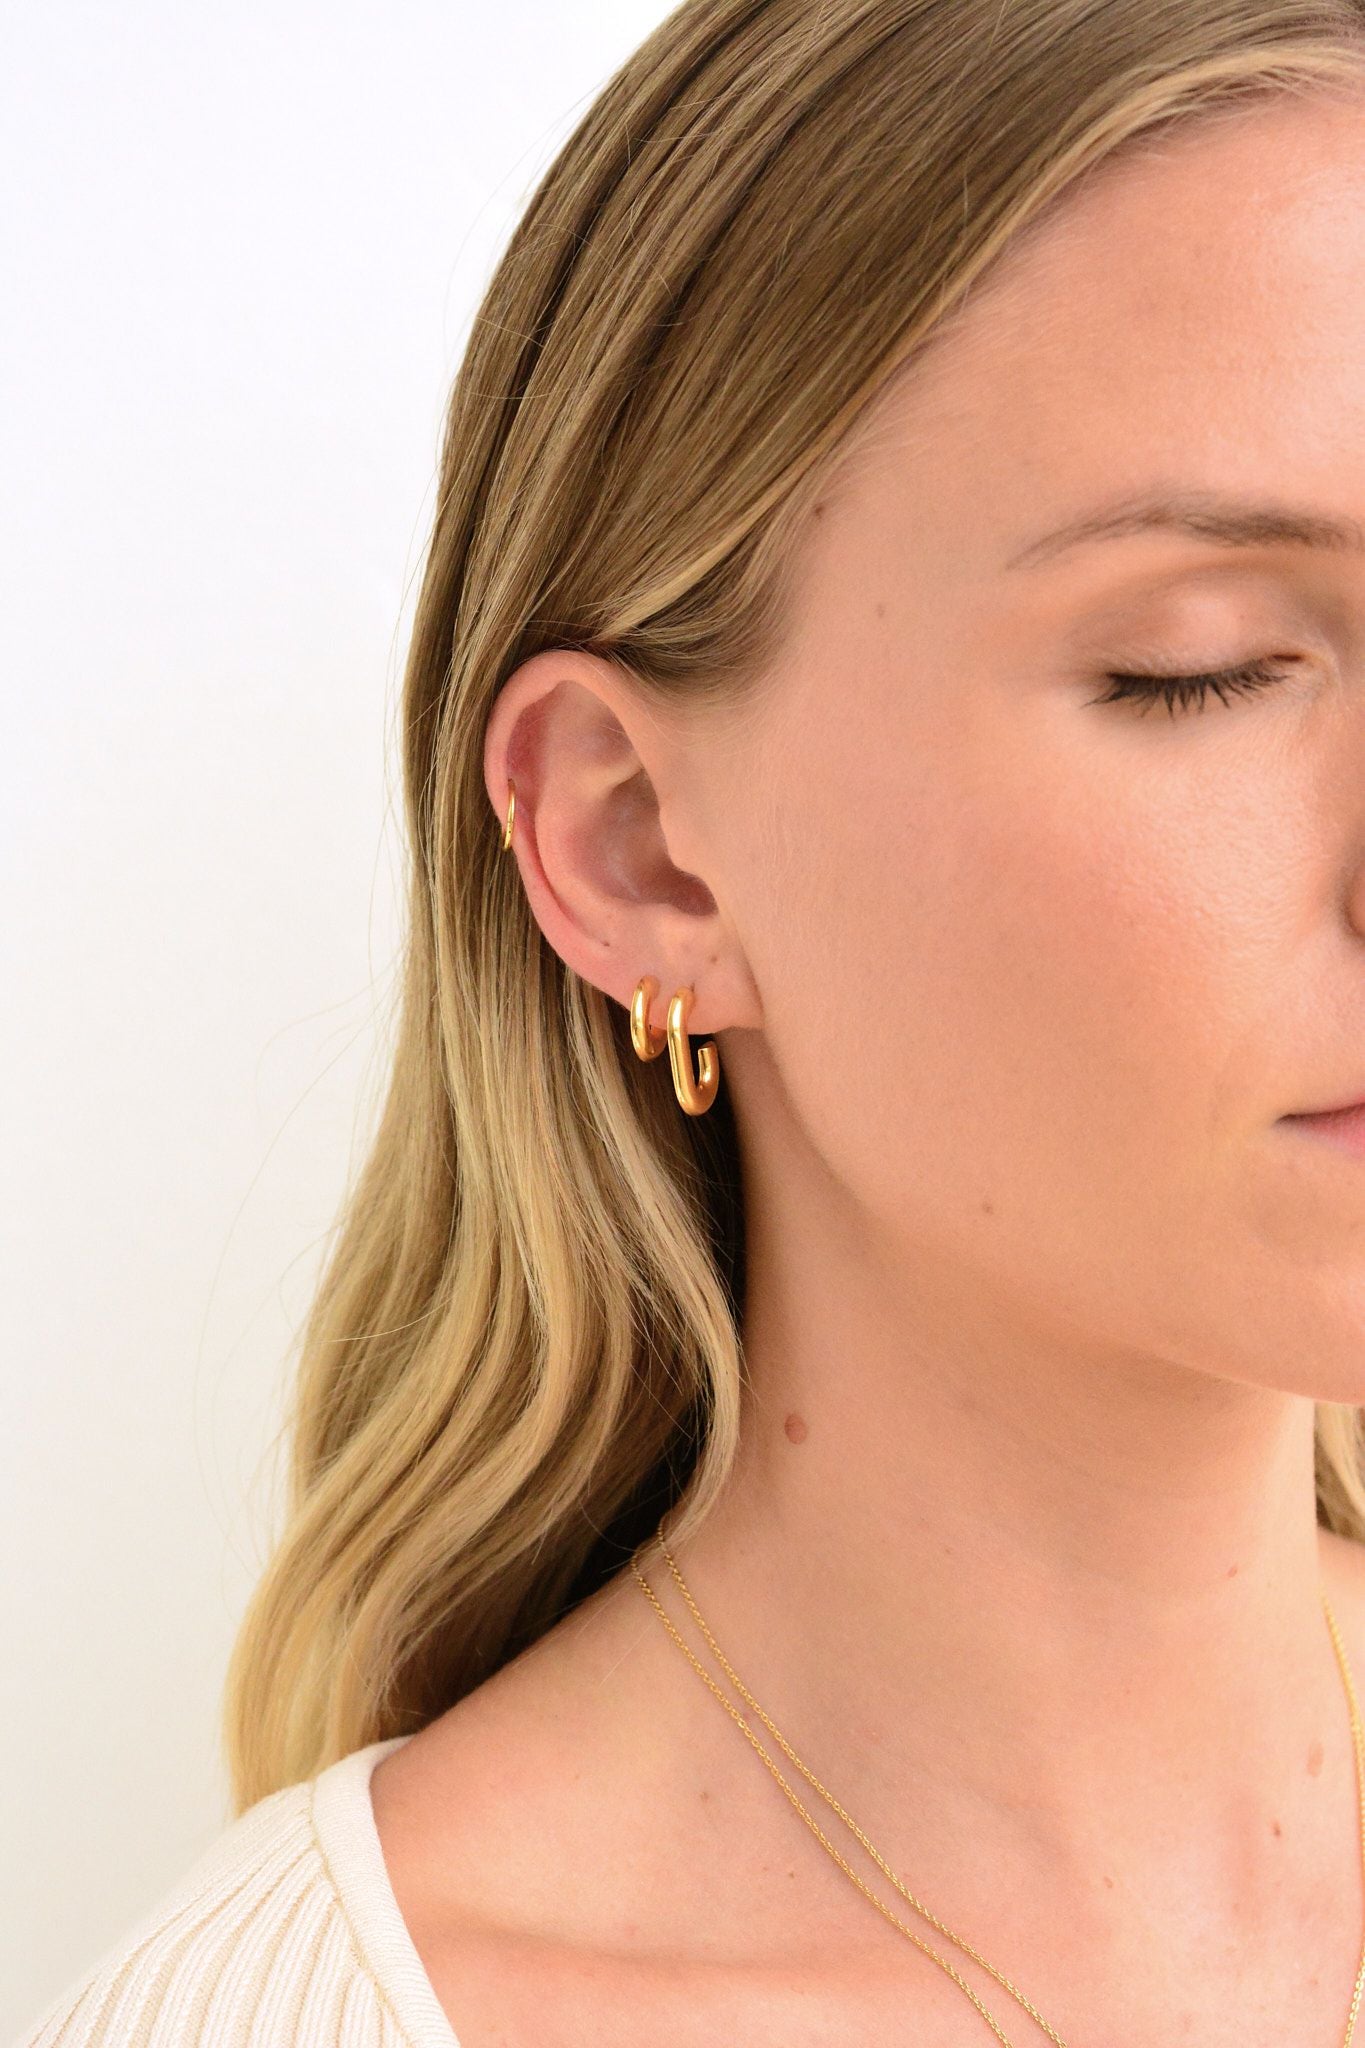 Linda Tahija Round Profile Hoop Earrings Gold